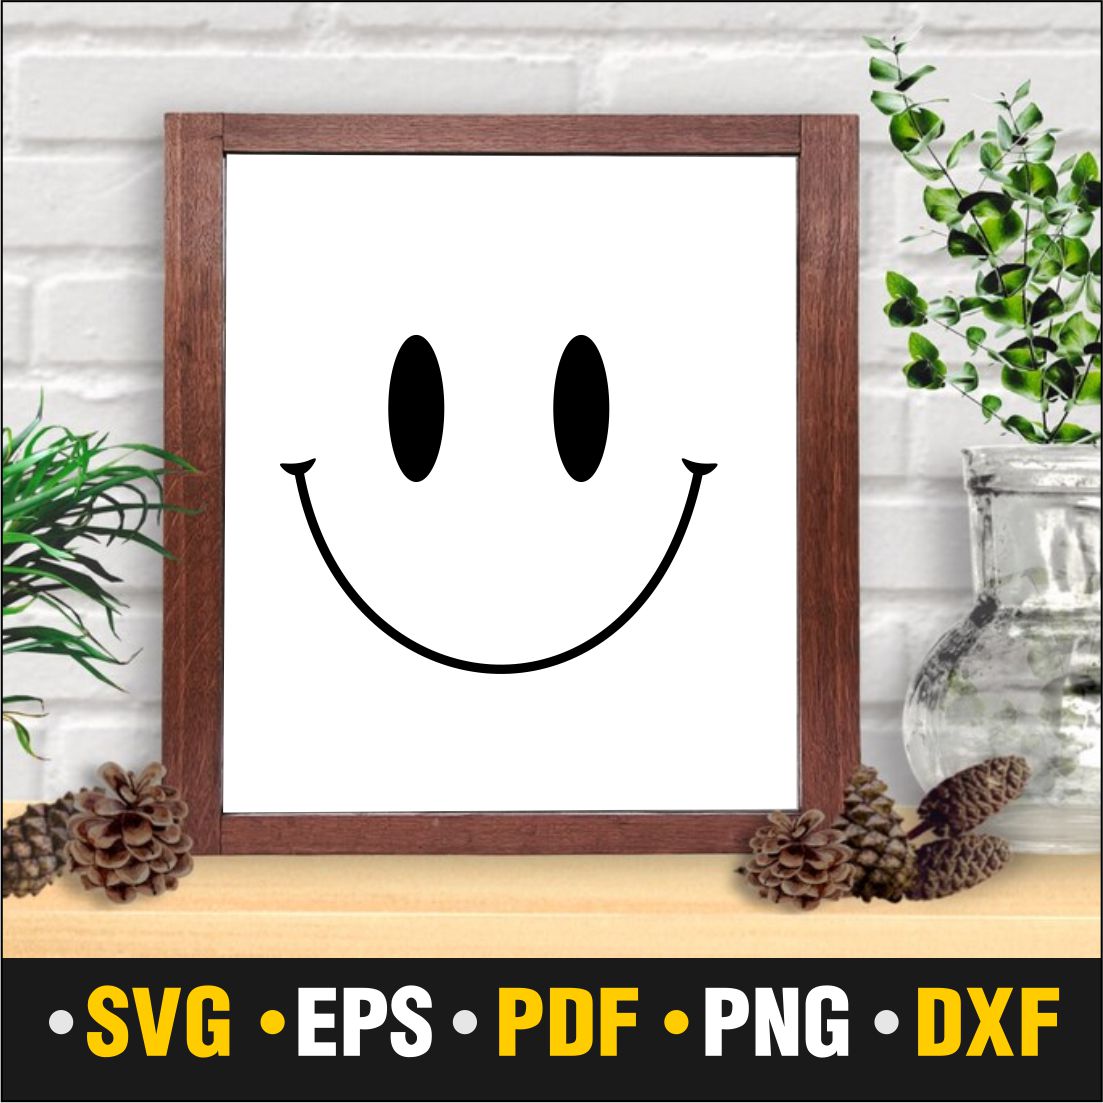 Smile Graphics Design cover image.